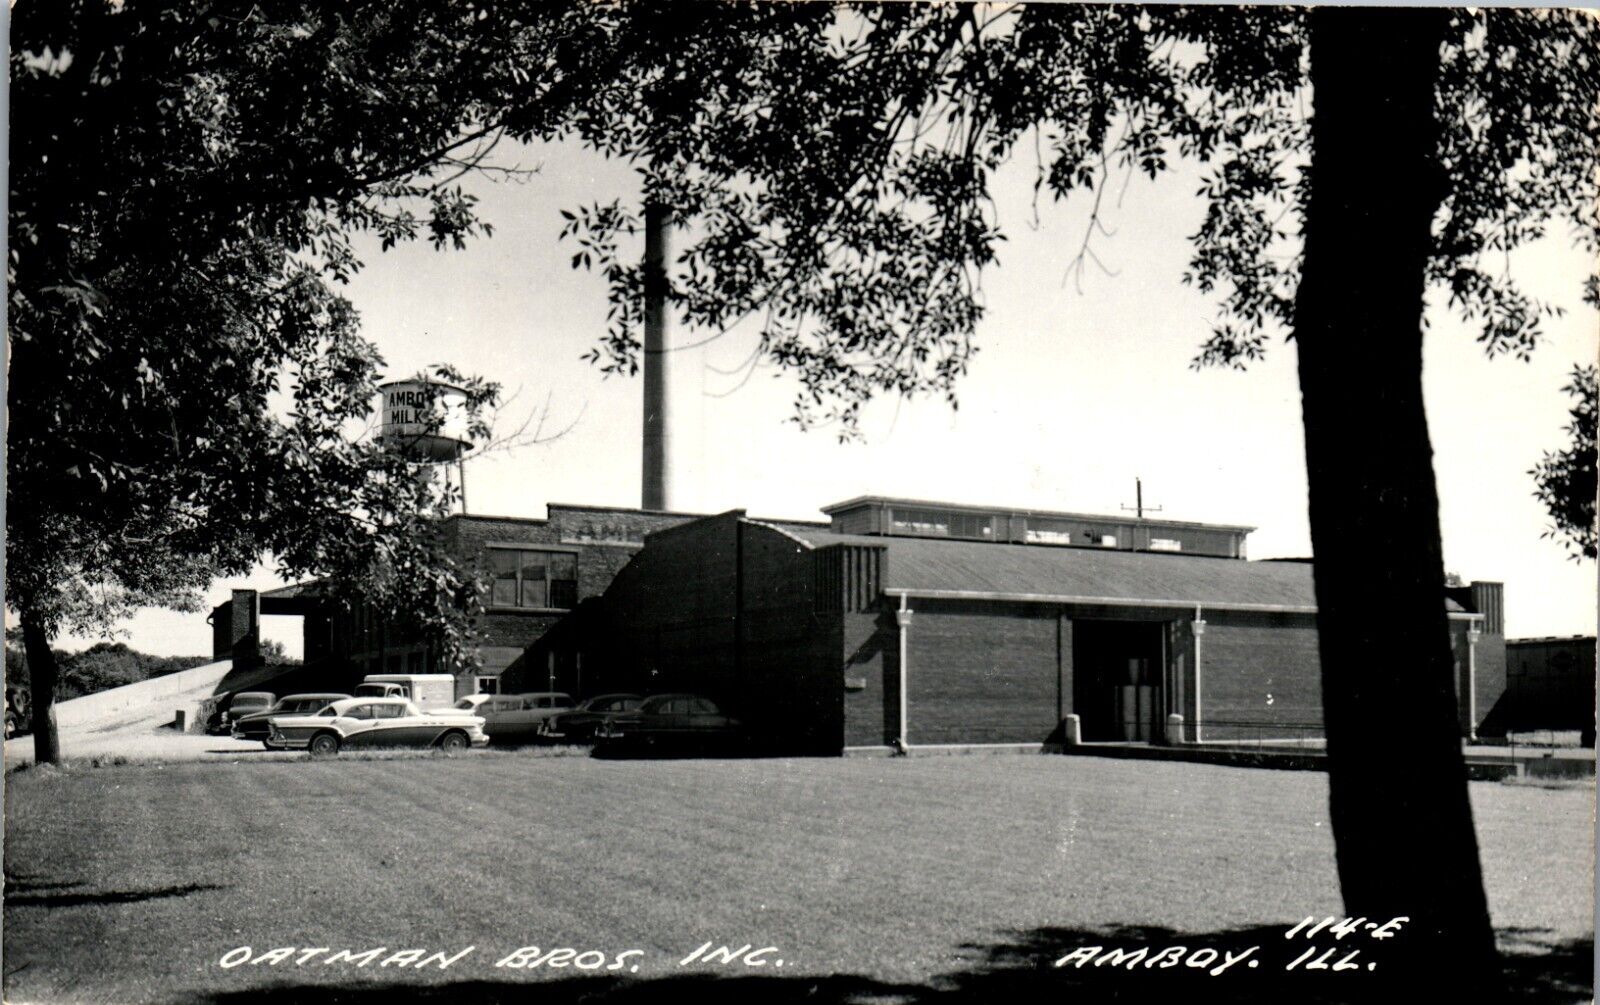 Oatman Bros. Inc., Amboy, Illinois RPPC (1950s) Dairy